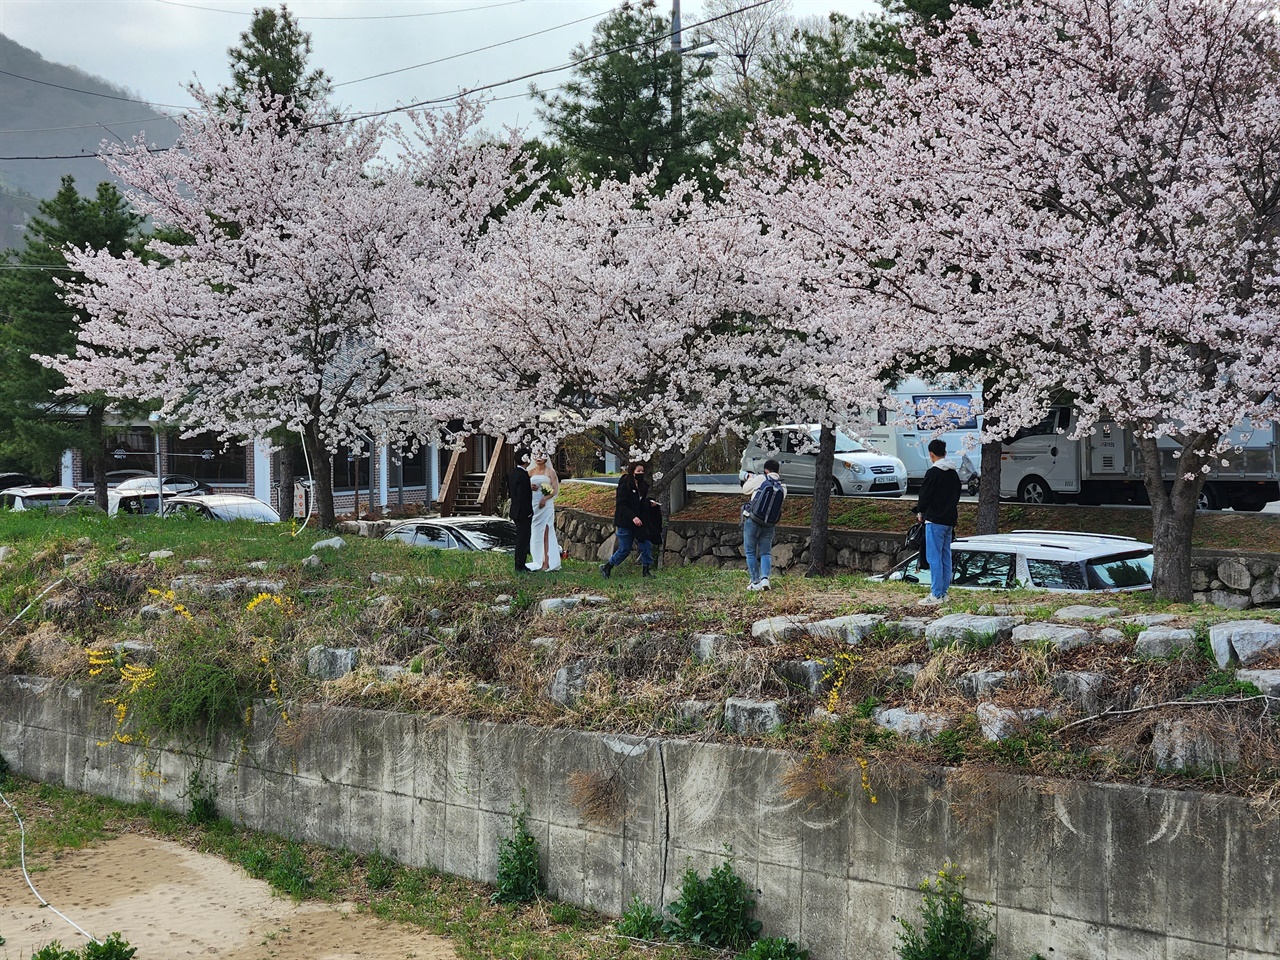  경주 흥무로 벚꽃길 생태하천 벚나무 아래에서 웨딩촬영 중인 예비부부 모습(2023.3.25)